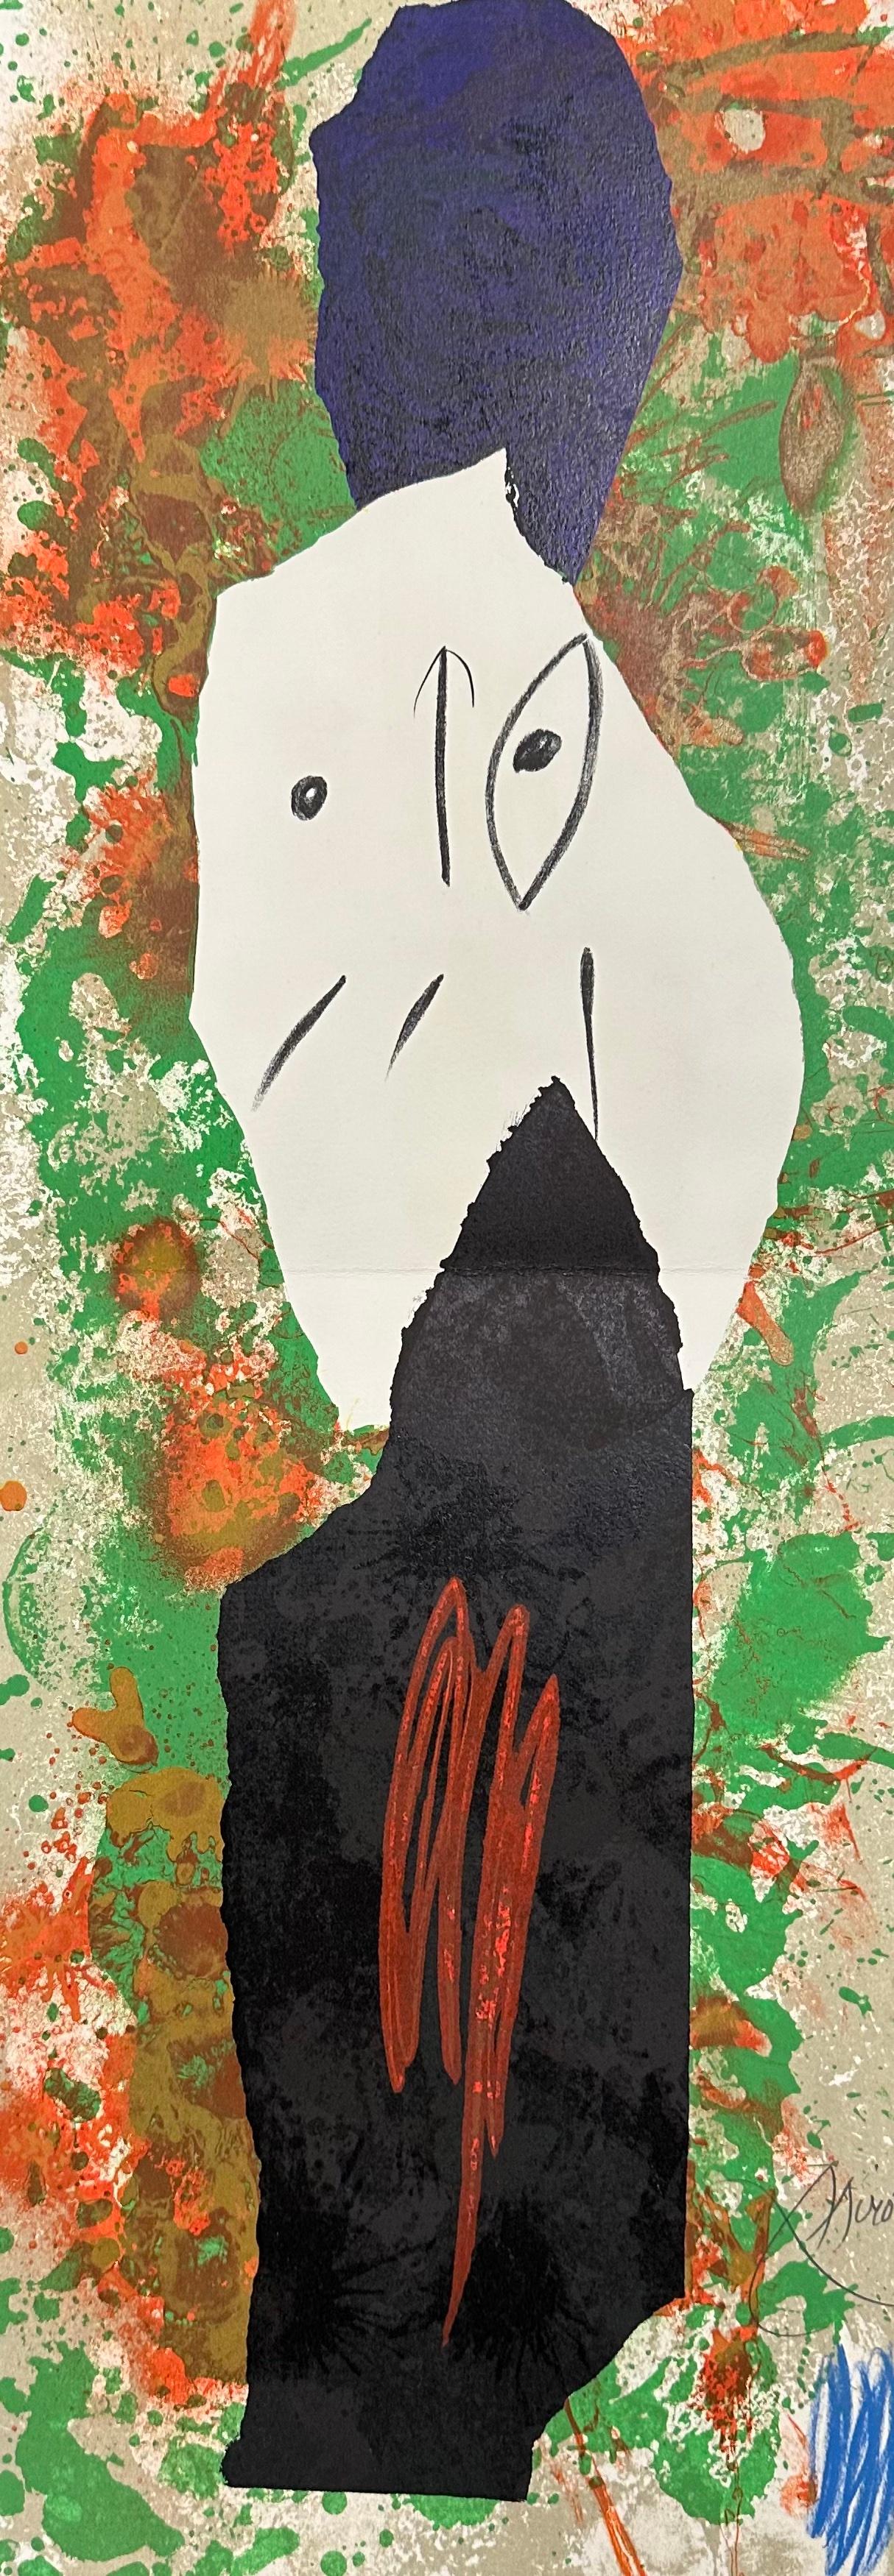 Joan Miró
M.988 aus "Les Pénaltiés de l'enfer ou les Nouvelles-Hébrides"
1974
Handsigniert mit Bleistift
Aus einer signierten Auflage von 50 Stück, mit dem Vermerk EA/50, gefaltet (wie ausgestellt)
Mourlot 988, Cramer bk.188
29,5 x 10,5 Zoll